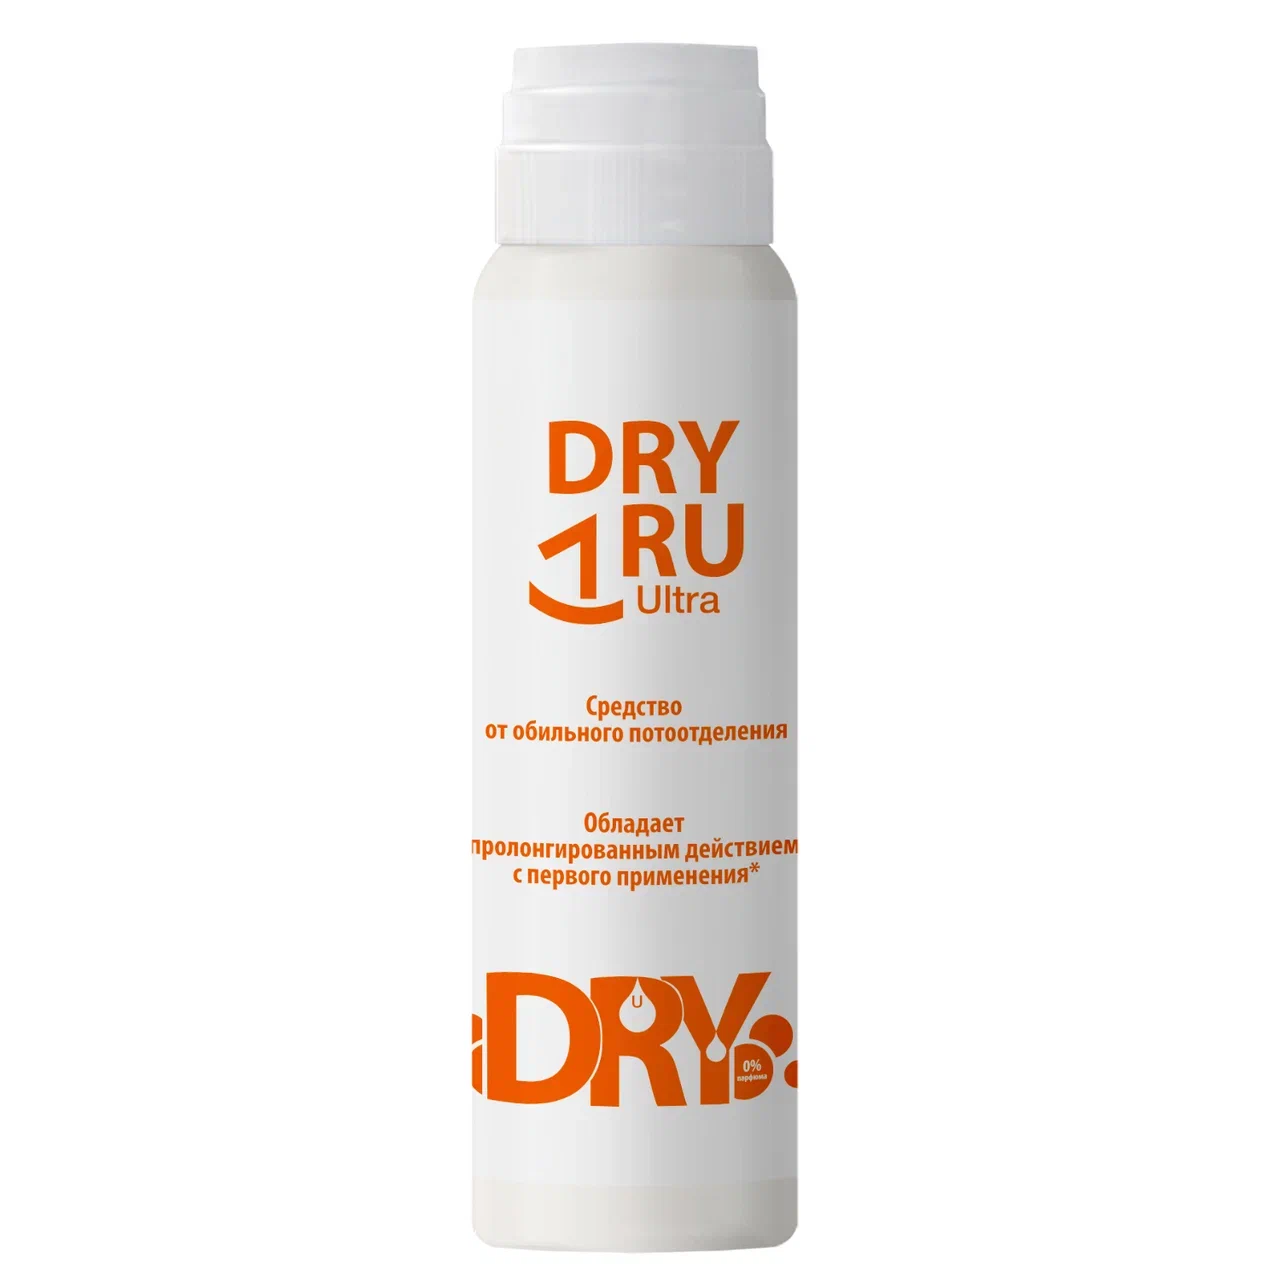 Дезодорант DRY RU Ультра от обильного потоотделения, с пролонгированным действием 50 мл dry ru средство от обильного потоотделения с пролонгированным действием roll 50 мл